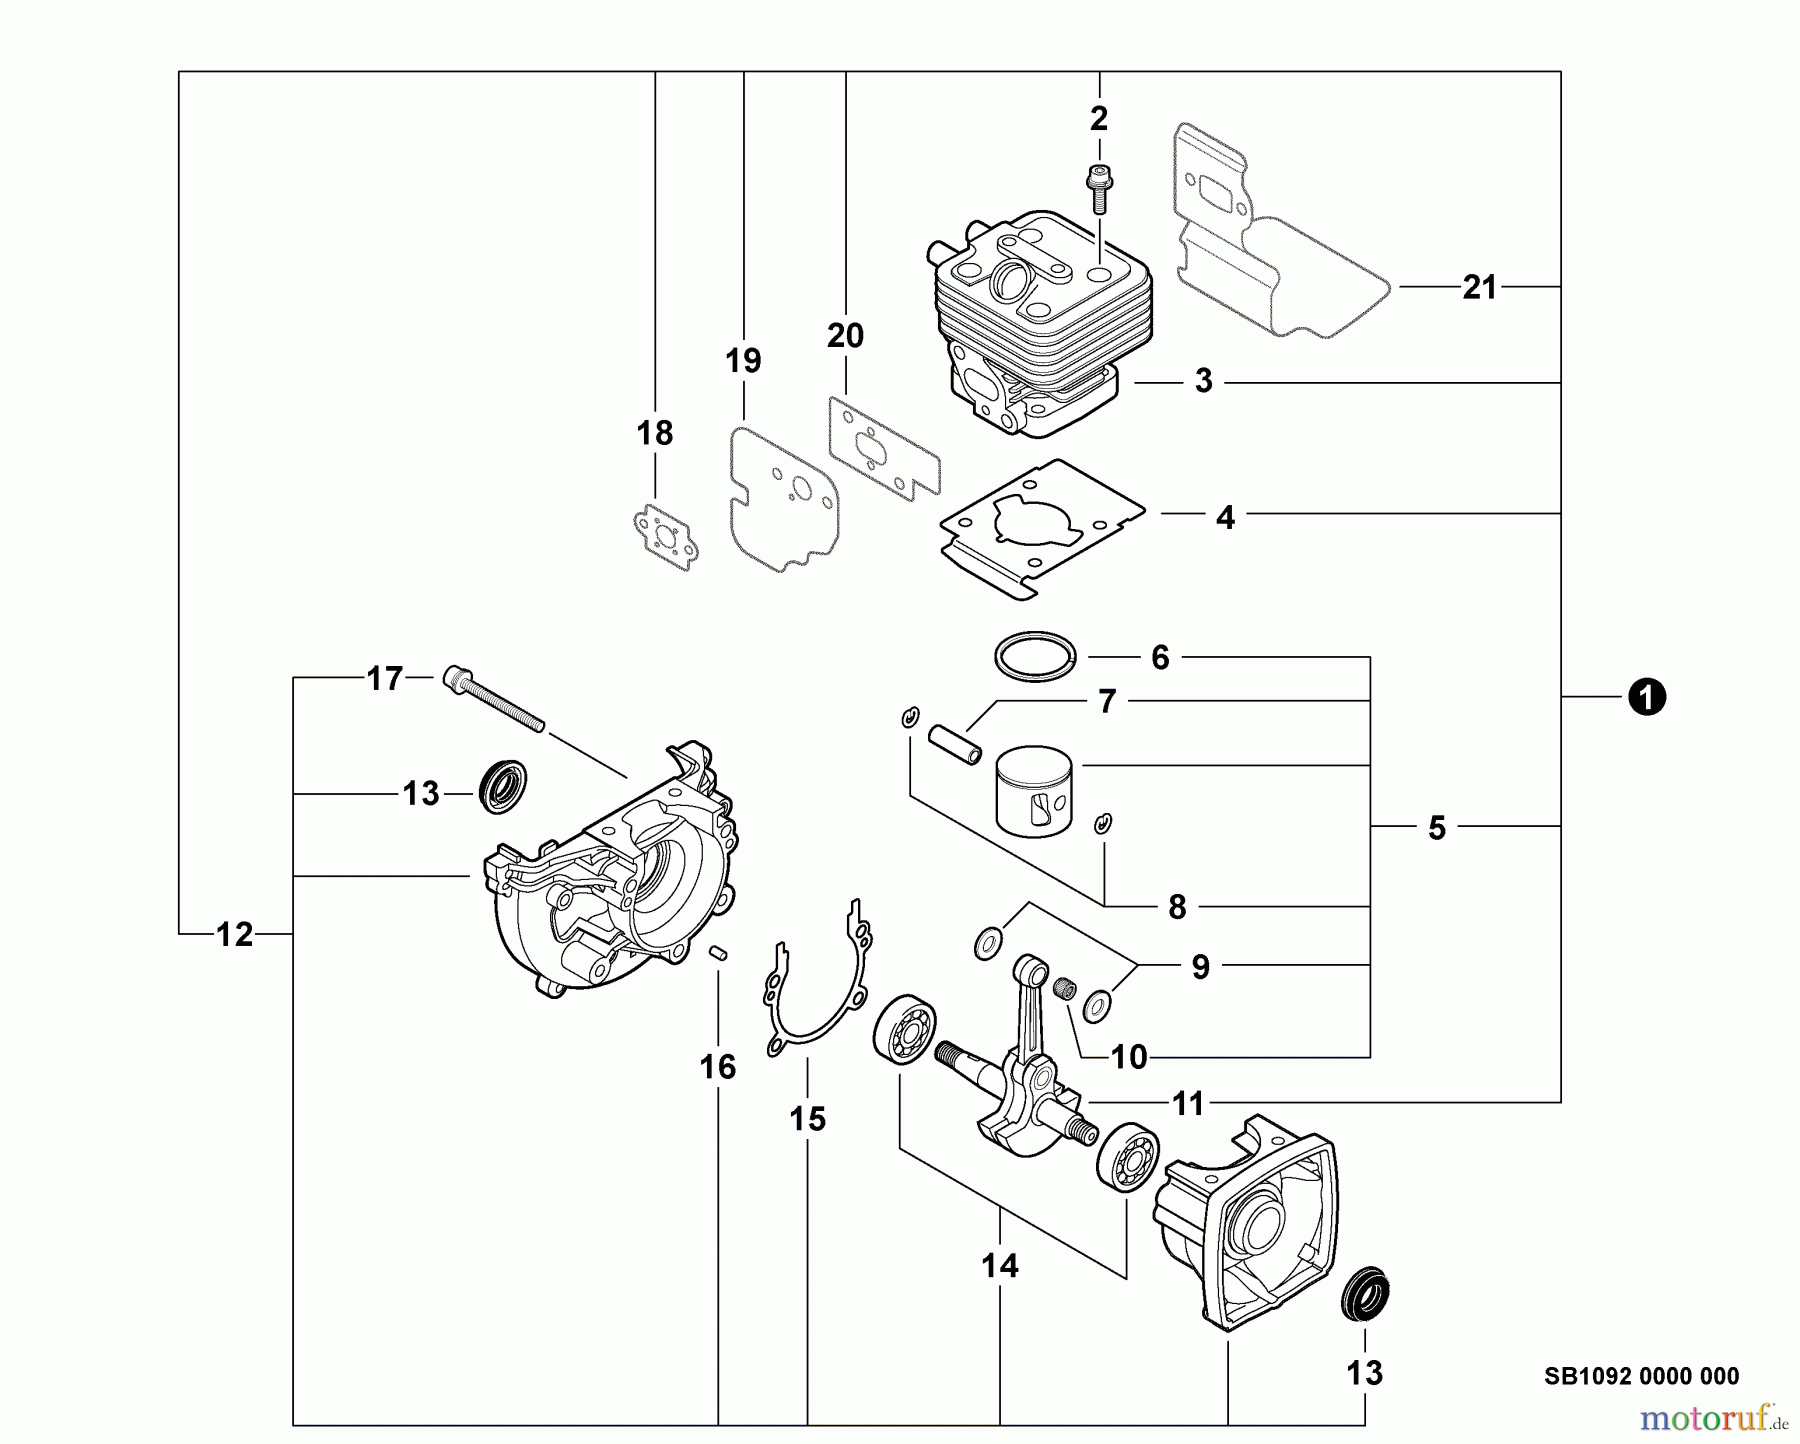  Echo Bläser / Sauger / Häcksler / Mulchgeräte	 PB-255LN - Echo Blower/Vacuums, S/N: P35213001001 - P35213999999 Engine, Short Block -- SB1092